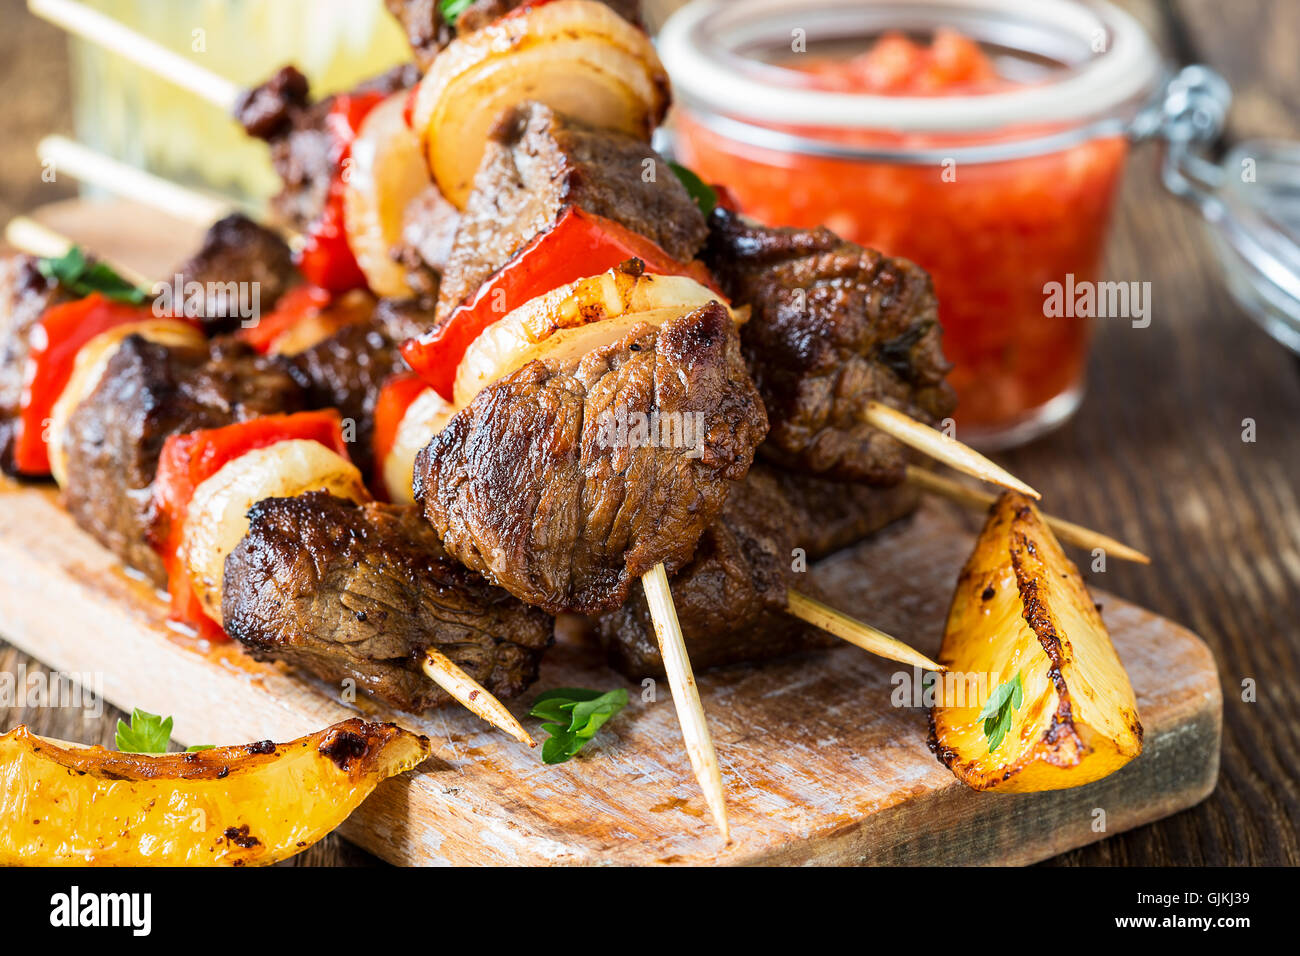 Brochettes de boeuf grillé avec légumes shishkabab Banque D'Images